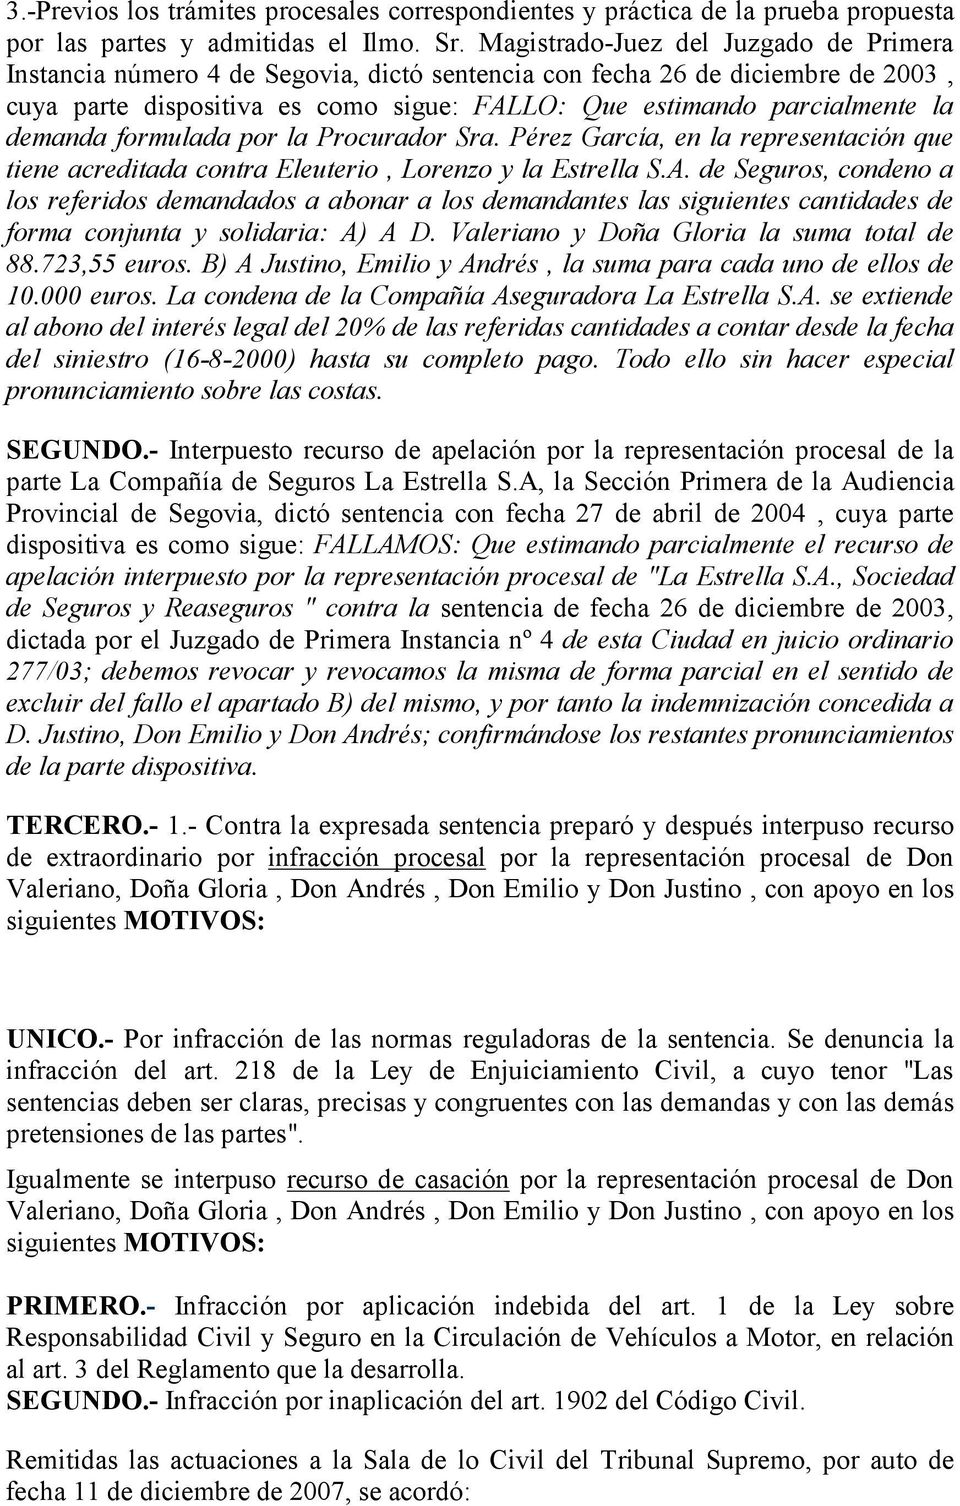 demanda formulada por la Procurador Sra. Pérez García, en la representación que tiene acreditada contra Eleuterio, Lorenzo y la Estrella S.A.